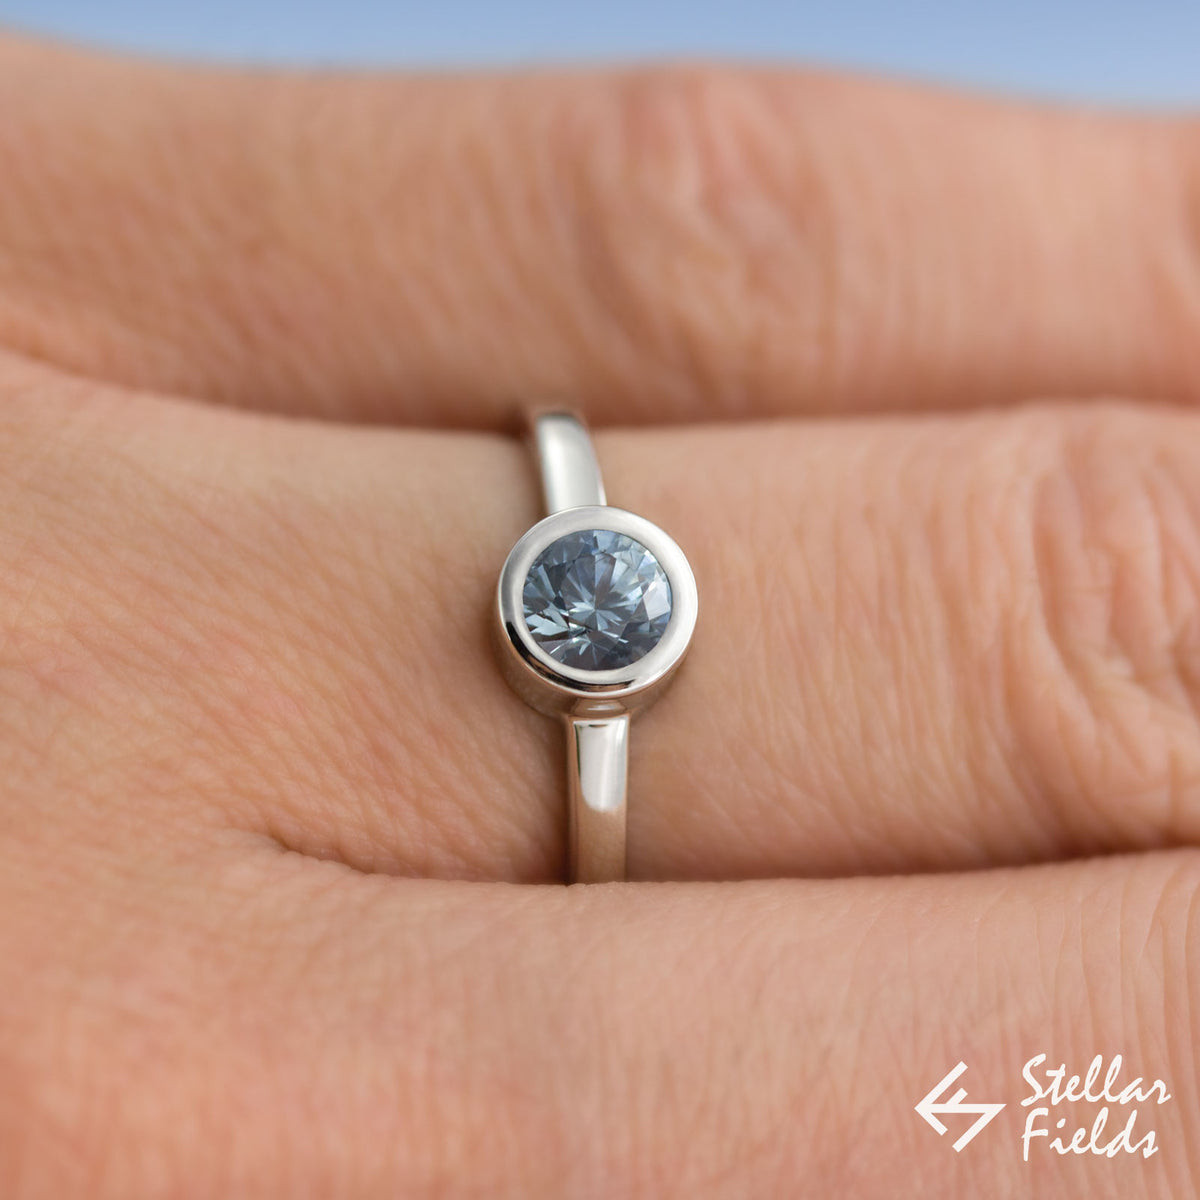 5mm Round Blue Sapphire Bezel Set Engagement Ring in 14k White Gold Platinum Stellar Fields Jewelry